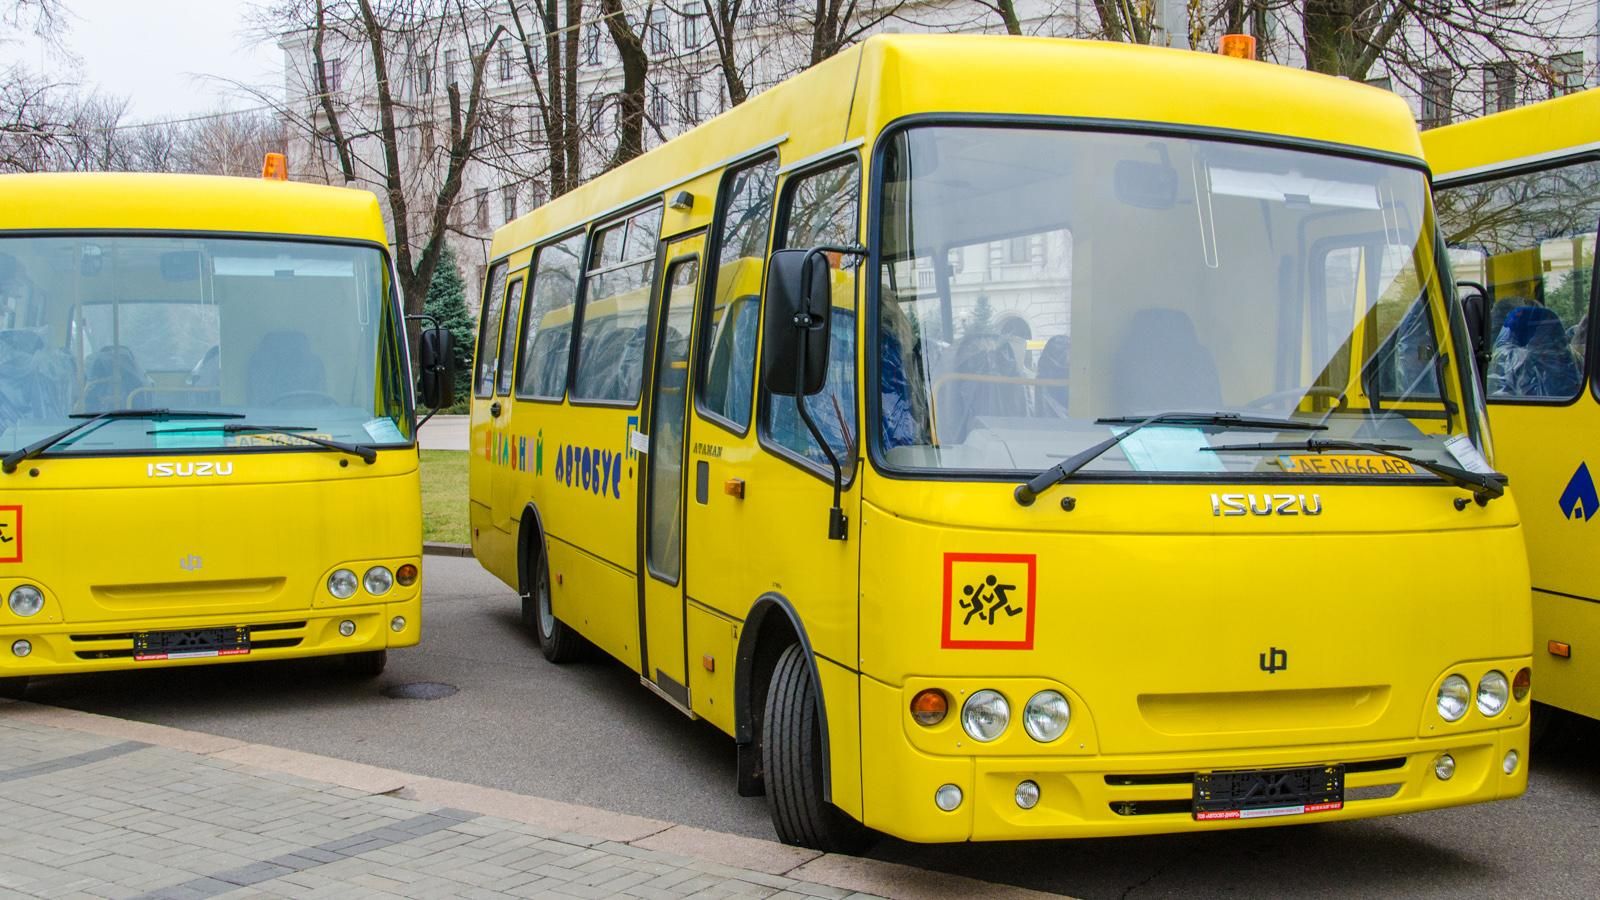 35 новых школьных автобусов получили районы Днепропетровской области, — Резниченко